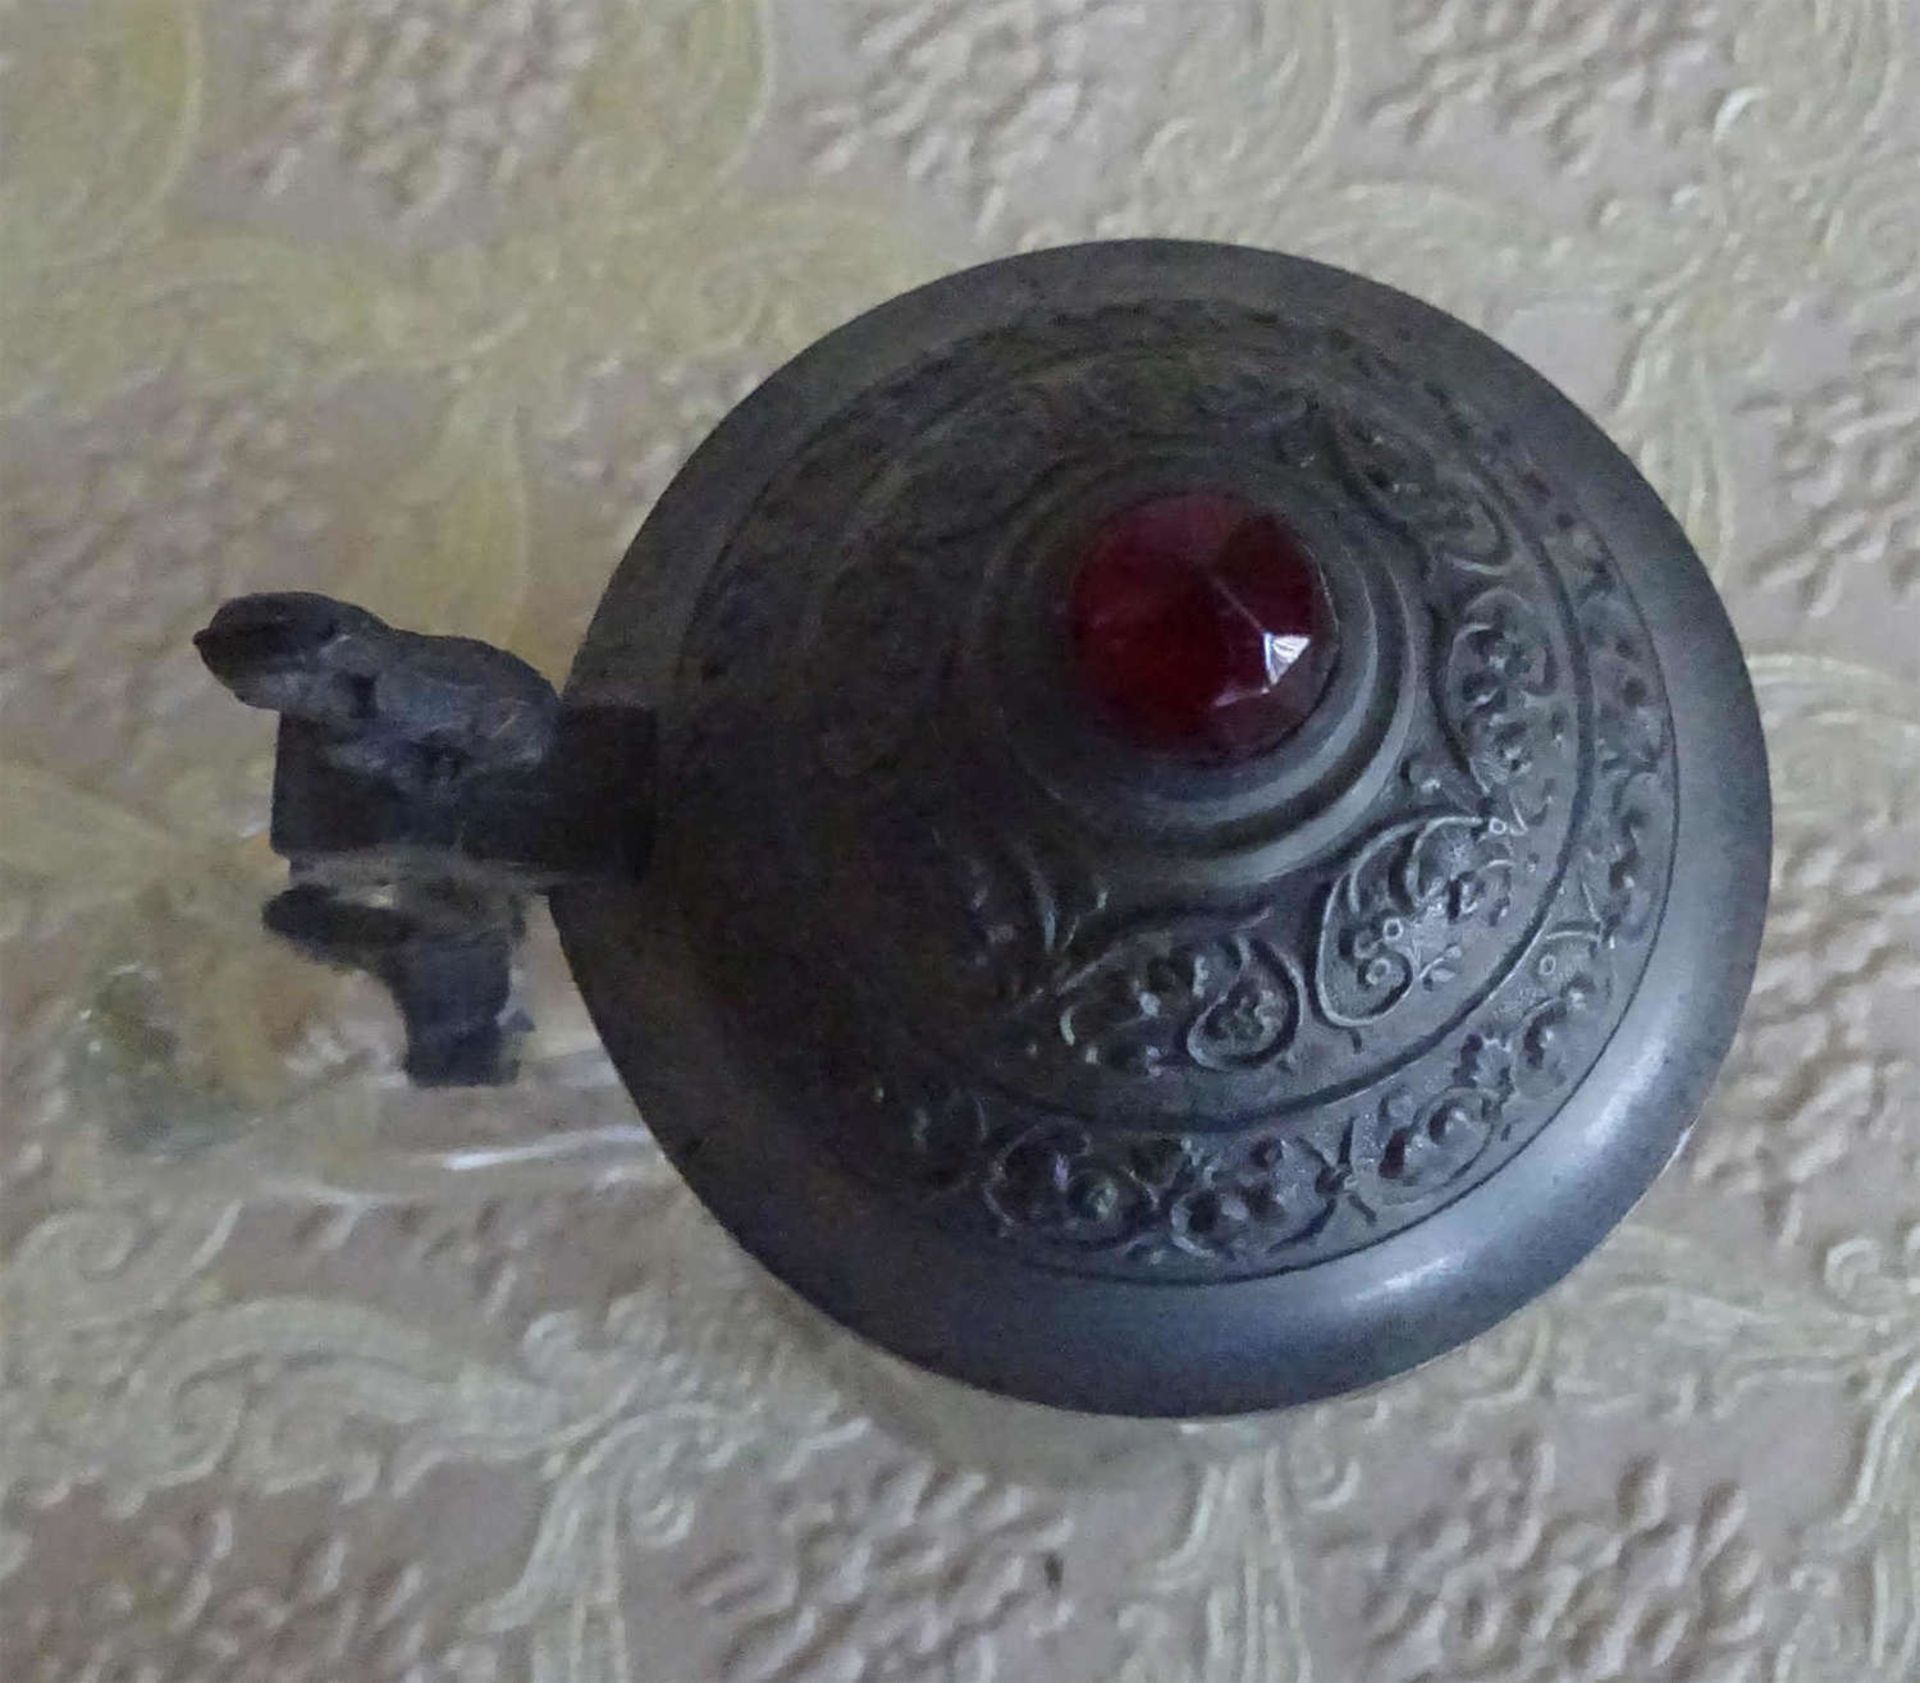 kleiner Pressglas Krug um 1910, Zinndeckel mit rotem Glasstein mittigsmall pressed glass pitcher - Image 2 of 2